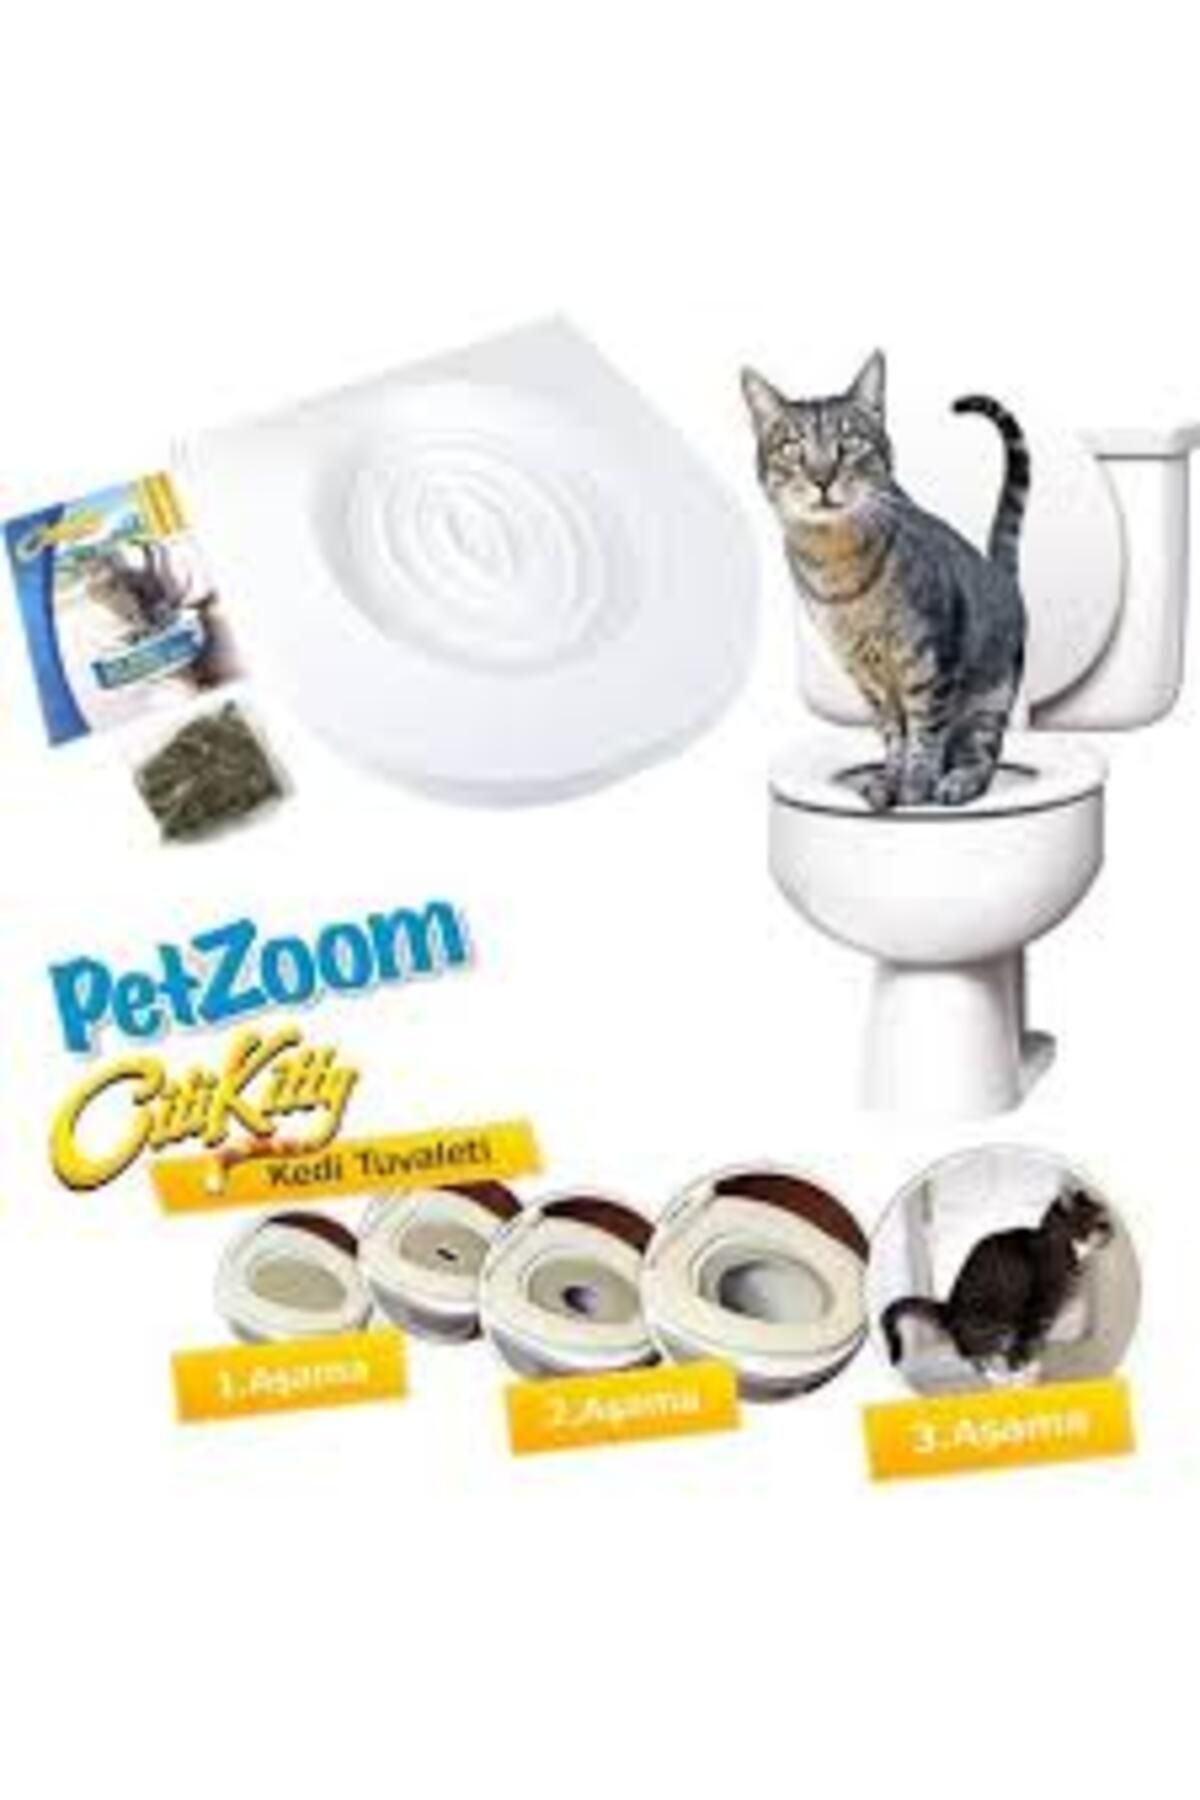 EMNVİEW Citi Kitty Kedi Tuvaleti Kedi Klozet Eğitim Seti